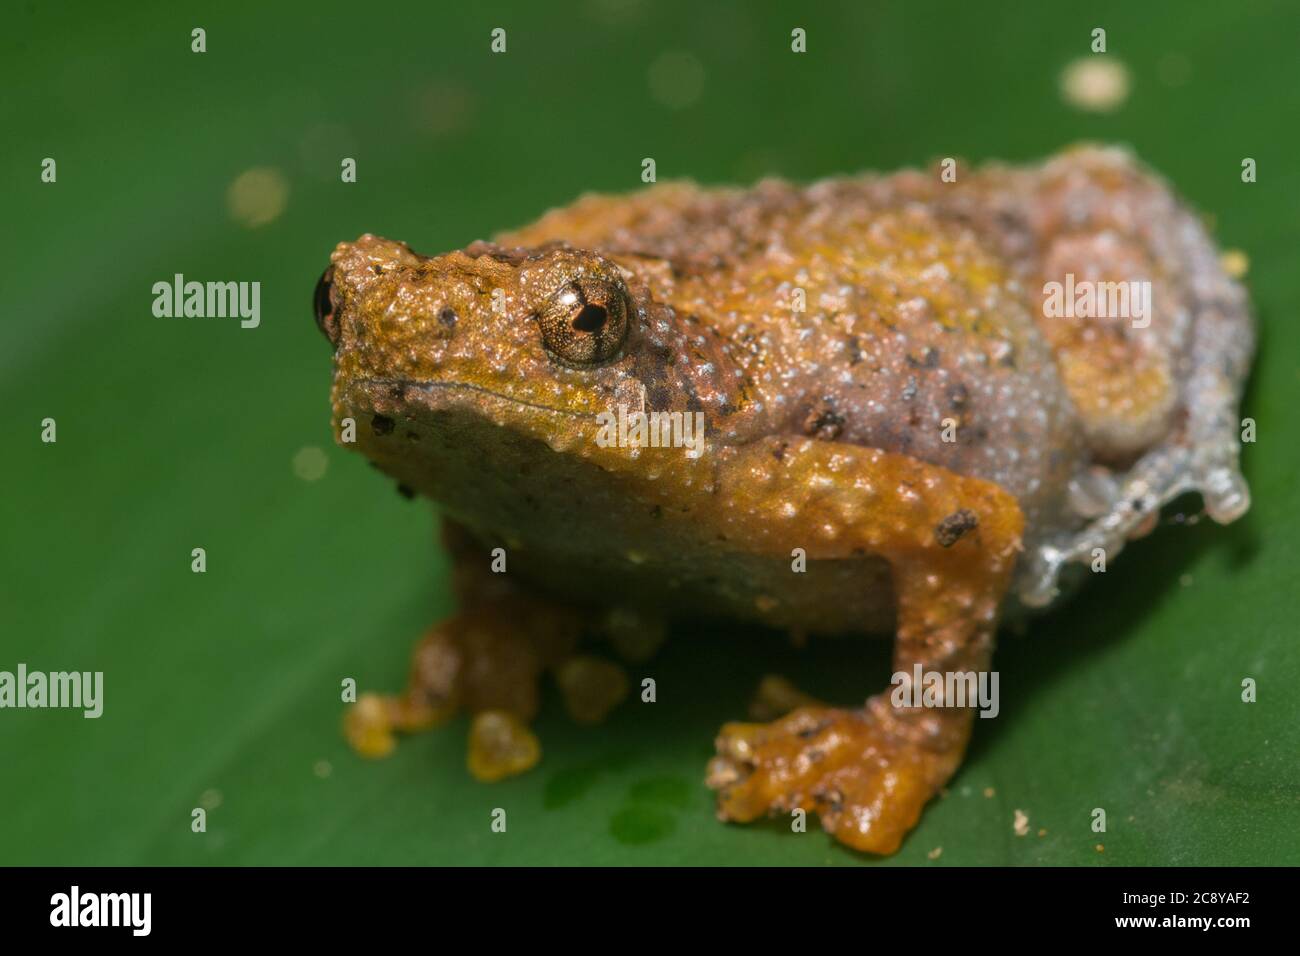 La rana di borneo (Metafrynella sundana) un piccolo microiide endemico delle foreste pluviali del Borneo. Foto Stock